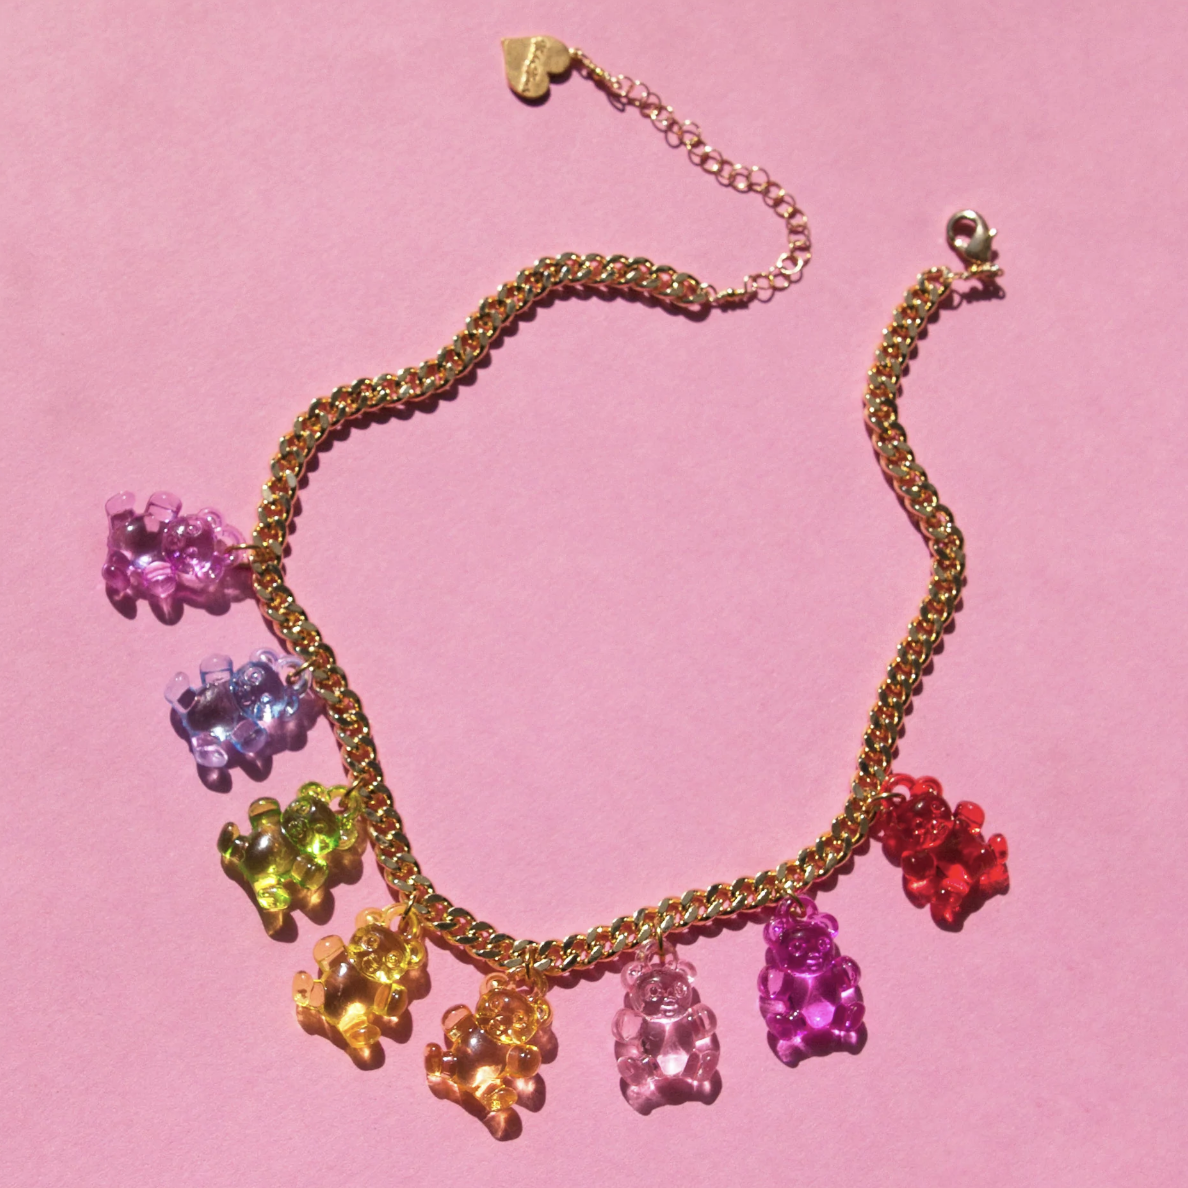 Rainbow Gummy Bear Necklace